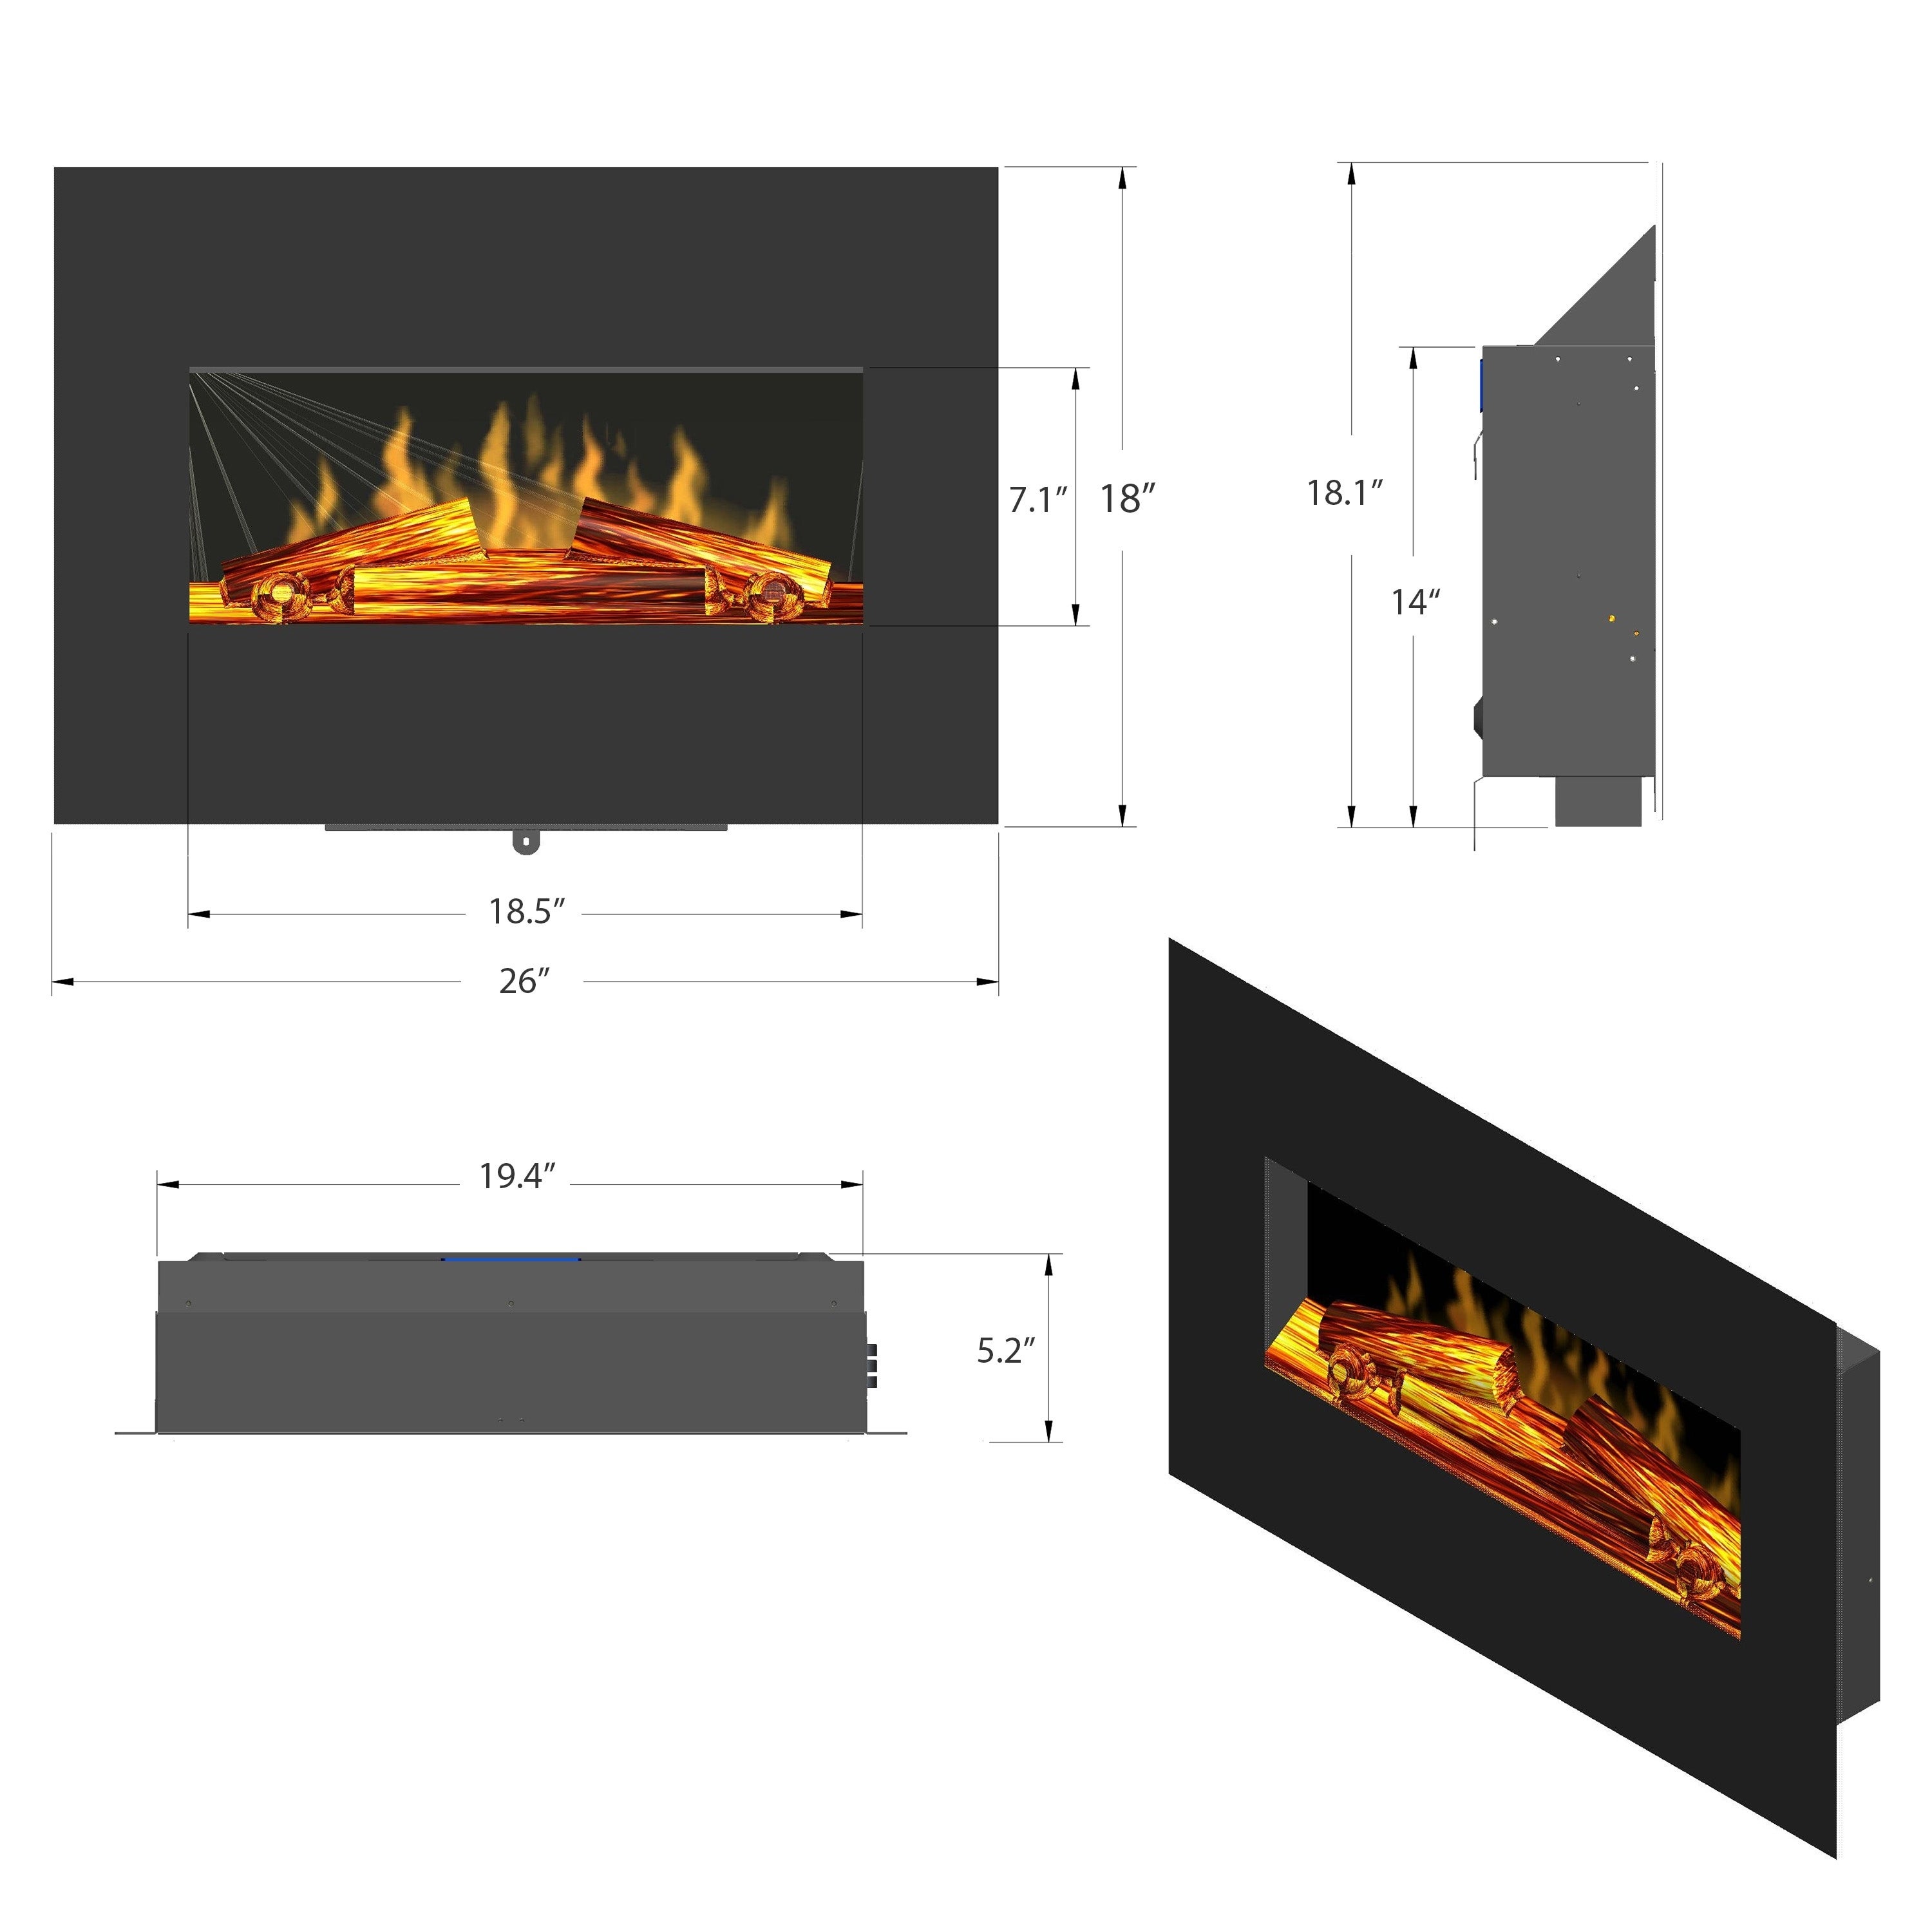 Golden Vantage FP0063 26 Wall Mount Electric Fireplace 3D Flames Firebox w Logs Heater 2b4de1f4 9f69 4e74 a4b5 d02fbdf5f91d